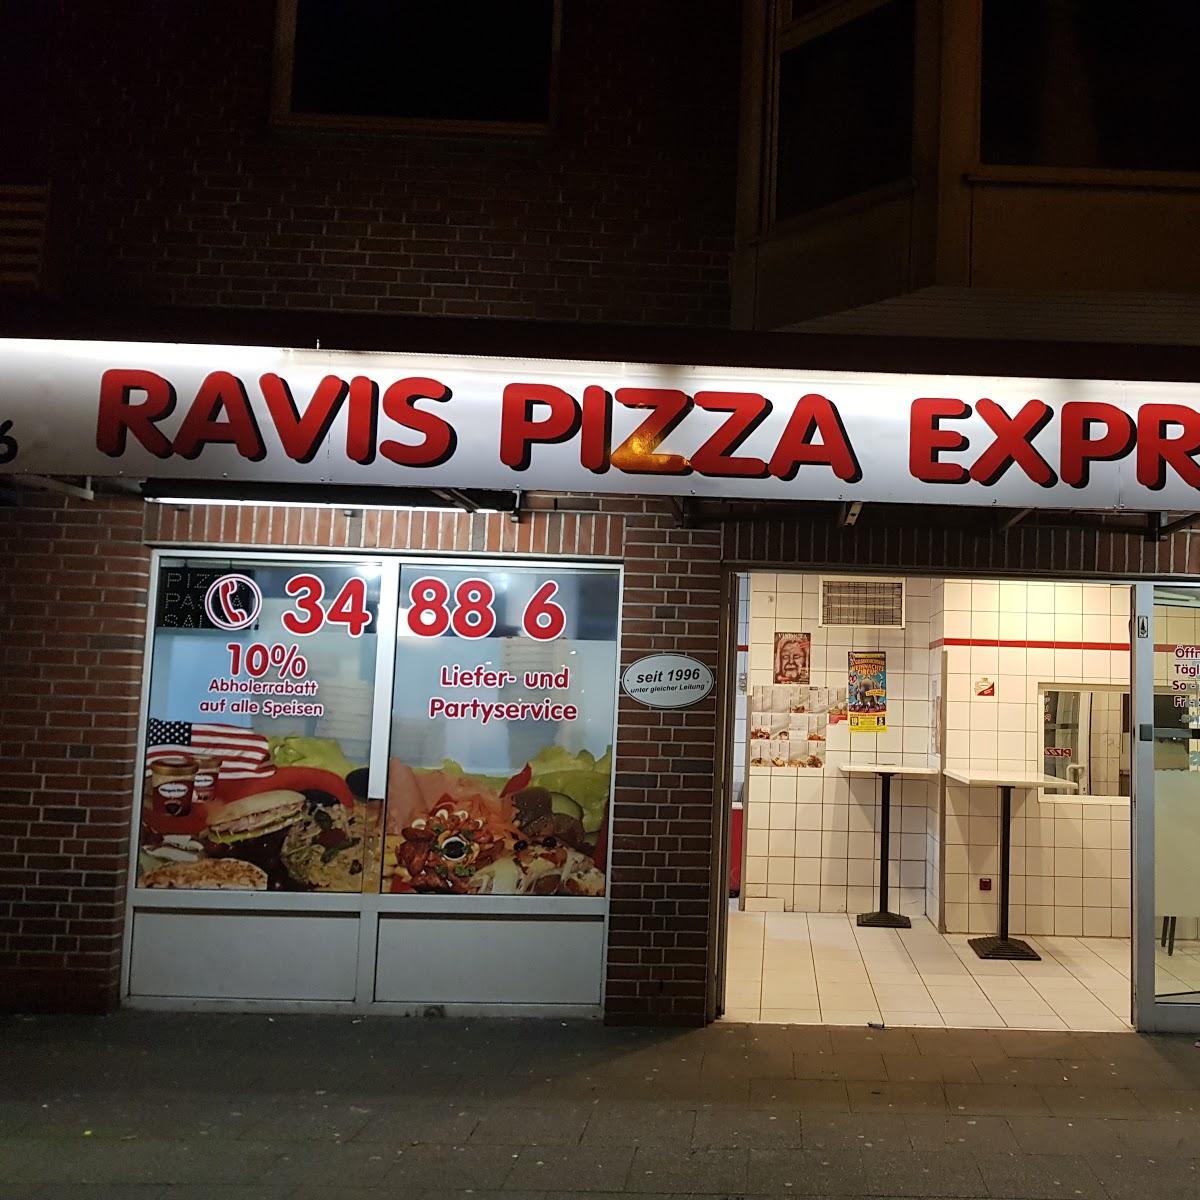 Restaurant "Ravis Pizza Express" in Essen